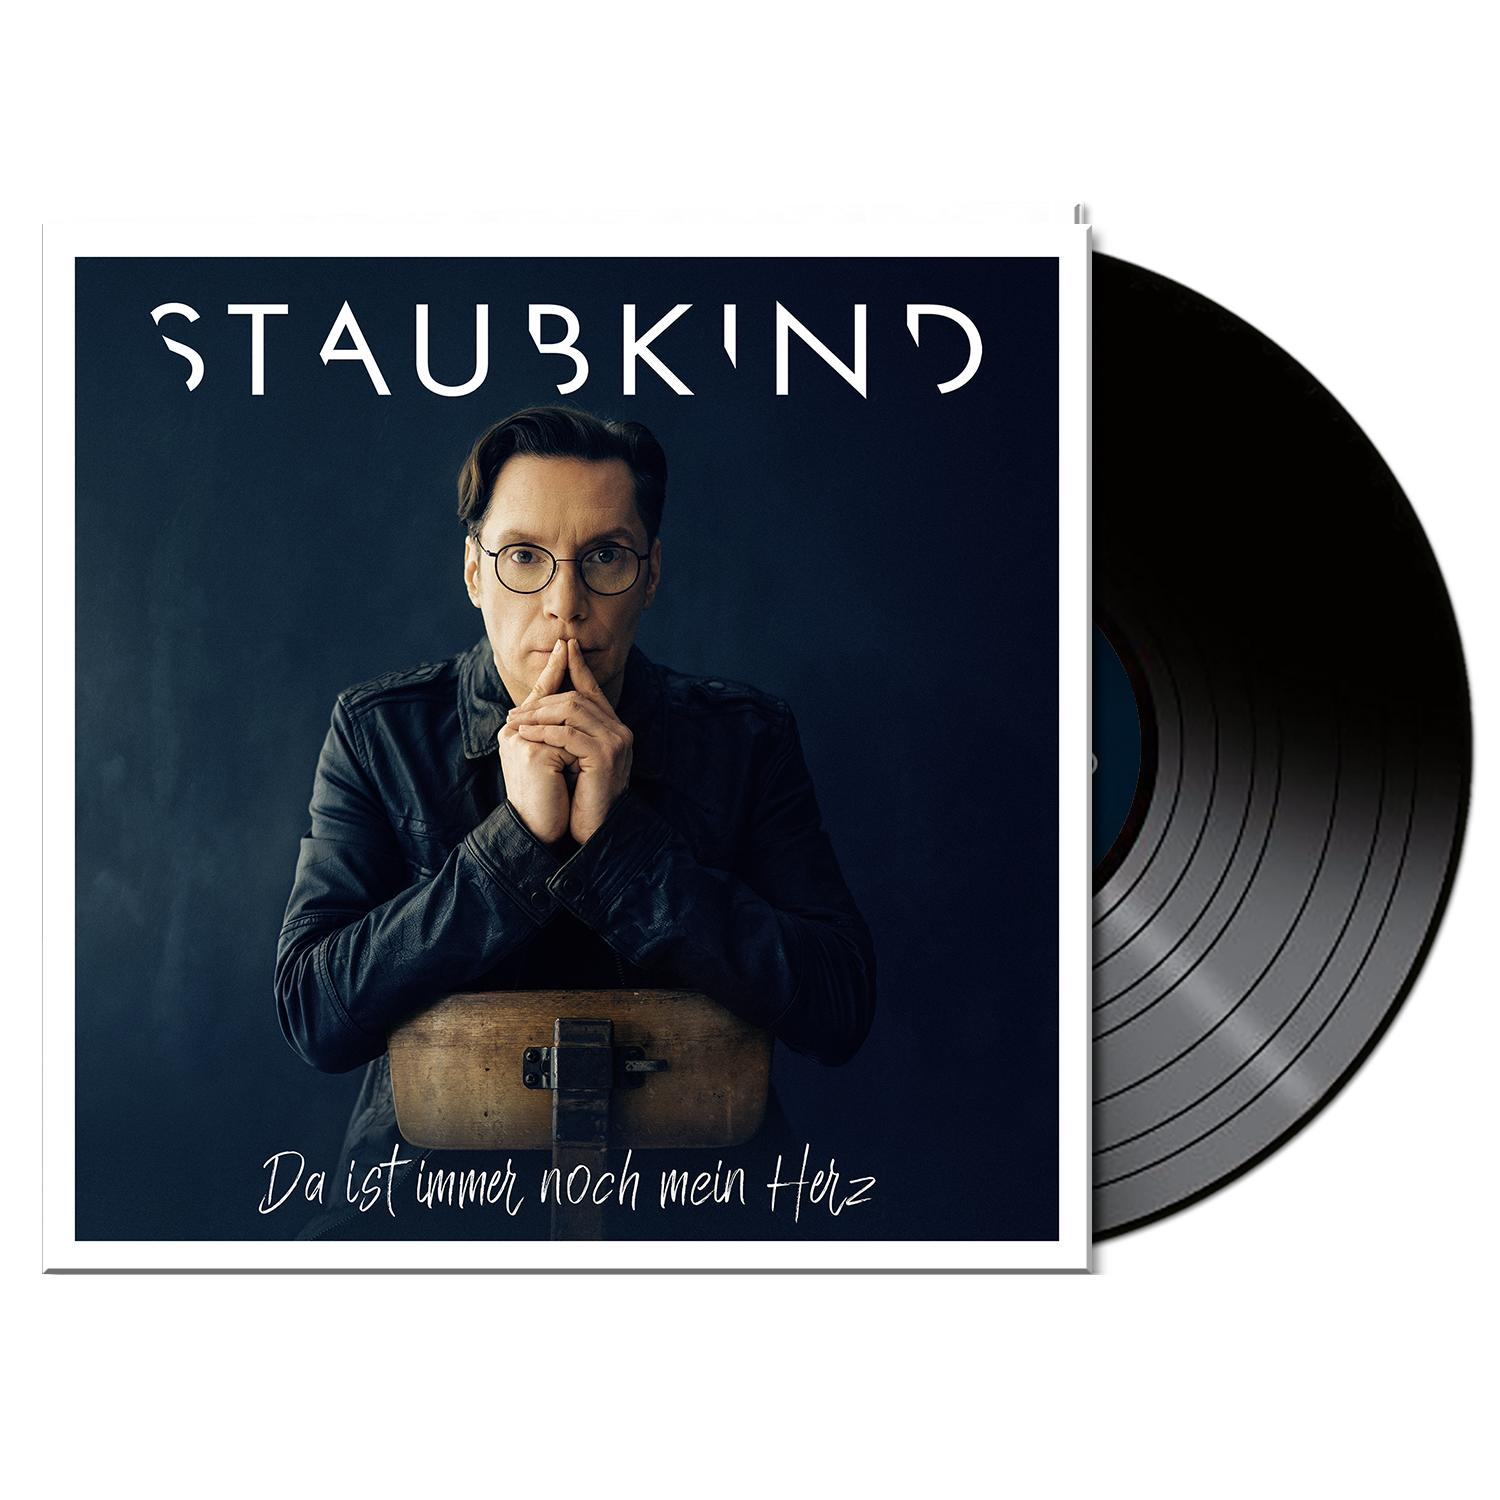 Black Staubkind - immer Da (Vinyl) ist Herz Vinyl) - noch mein (Gtf.